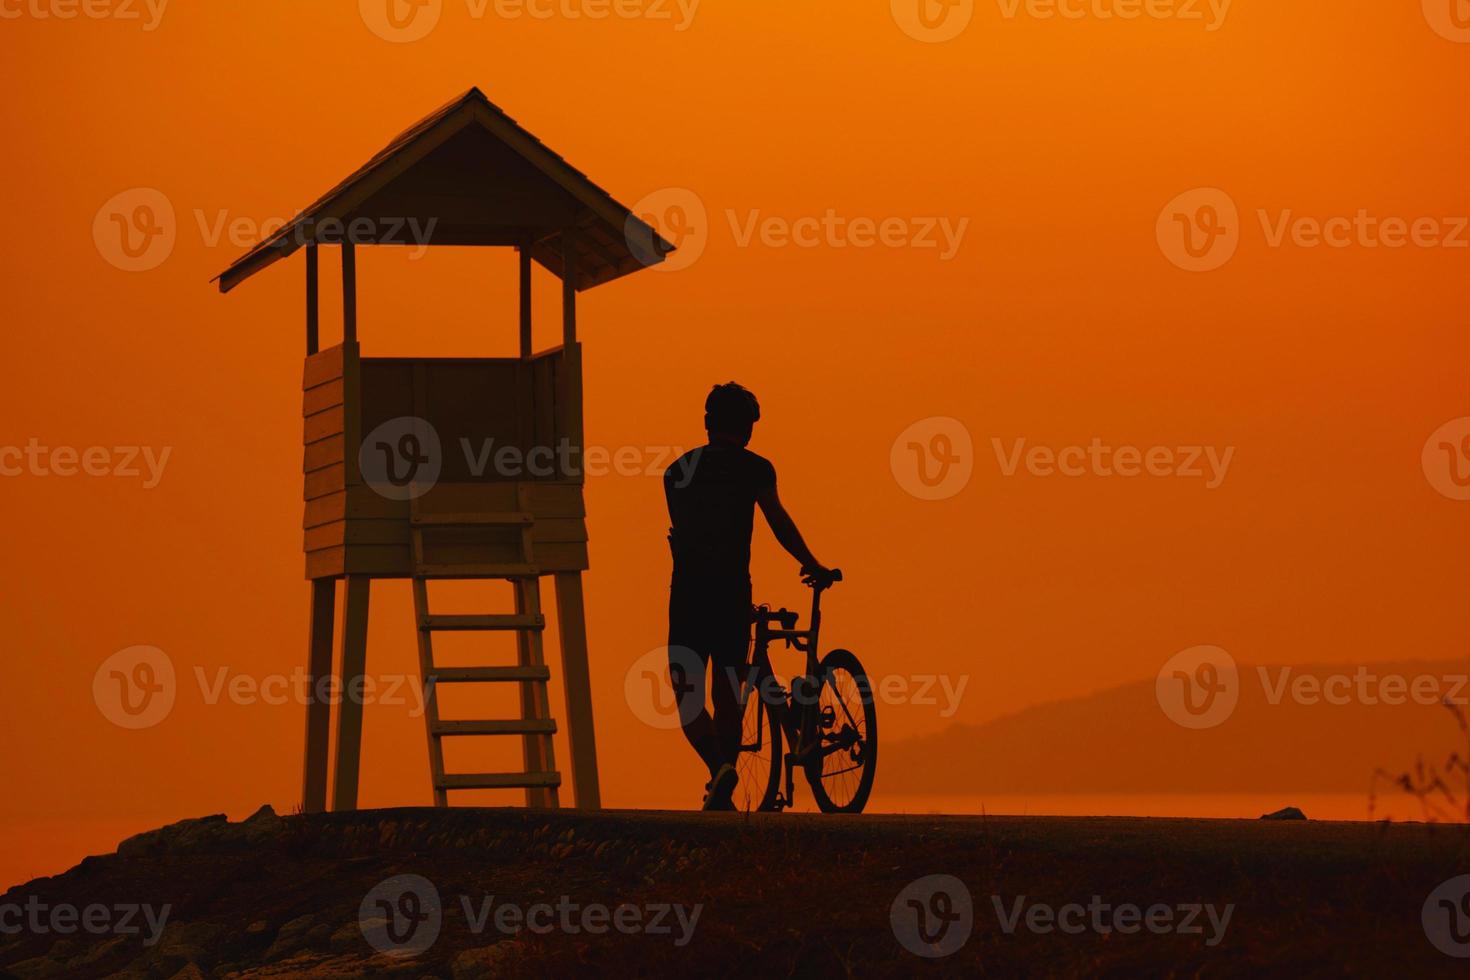 silhouet van een fietser op zonsondergang in thailand. foto